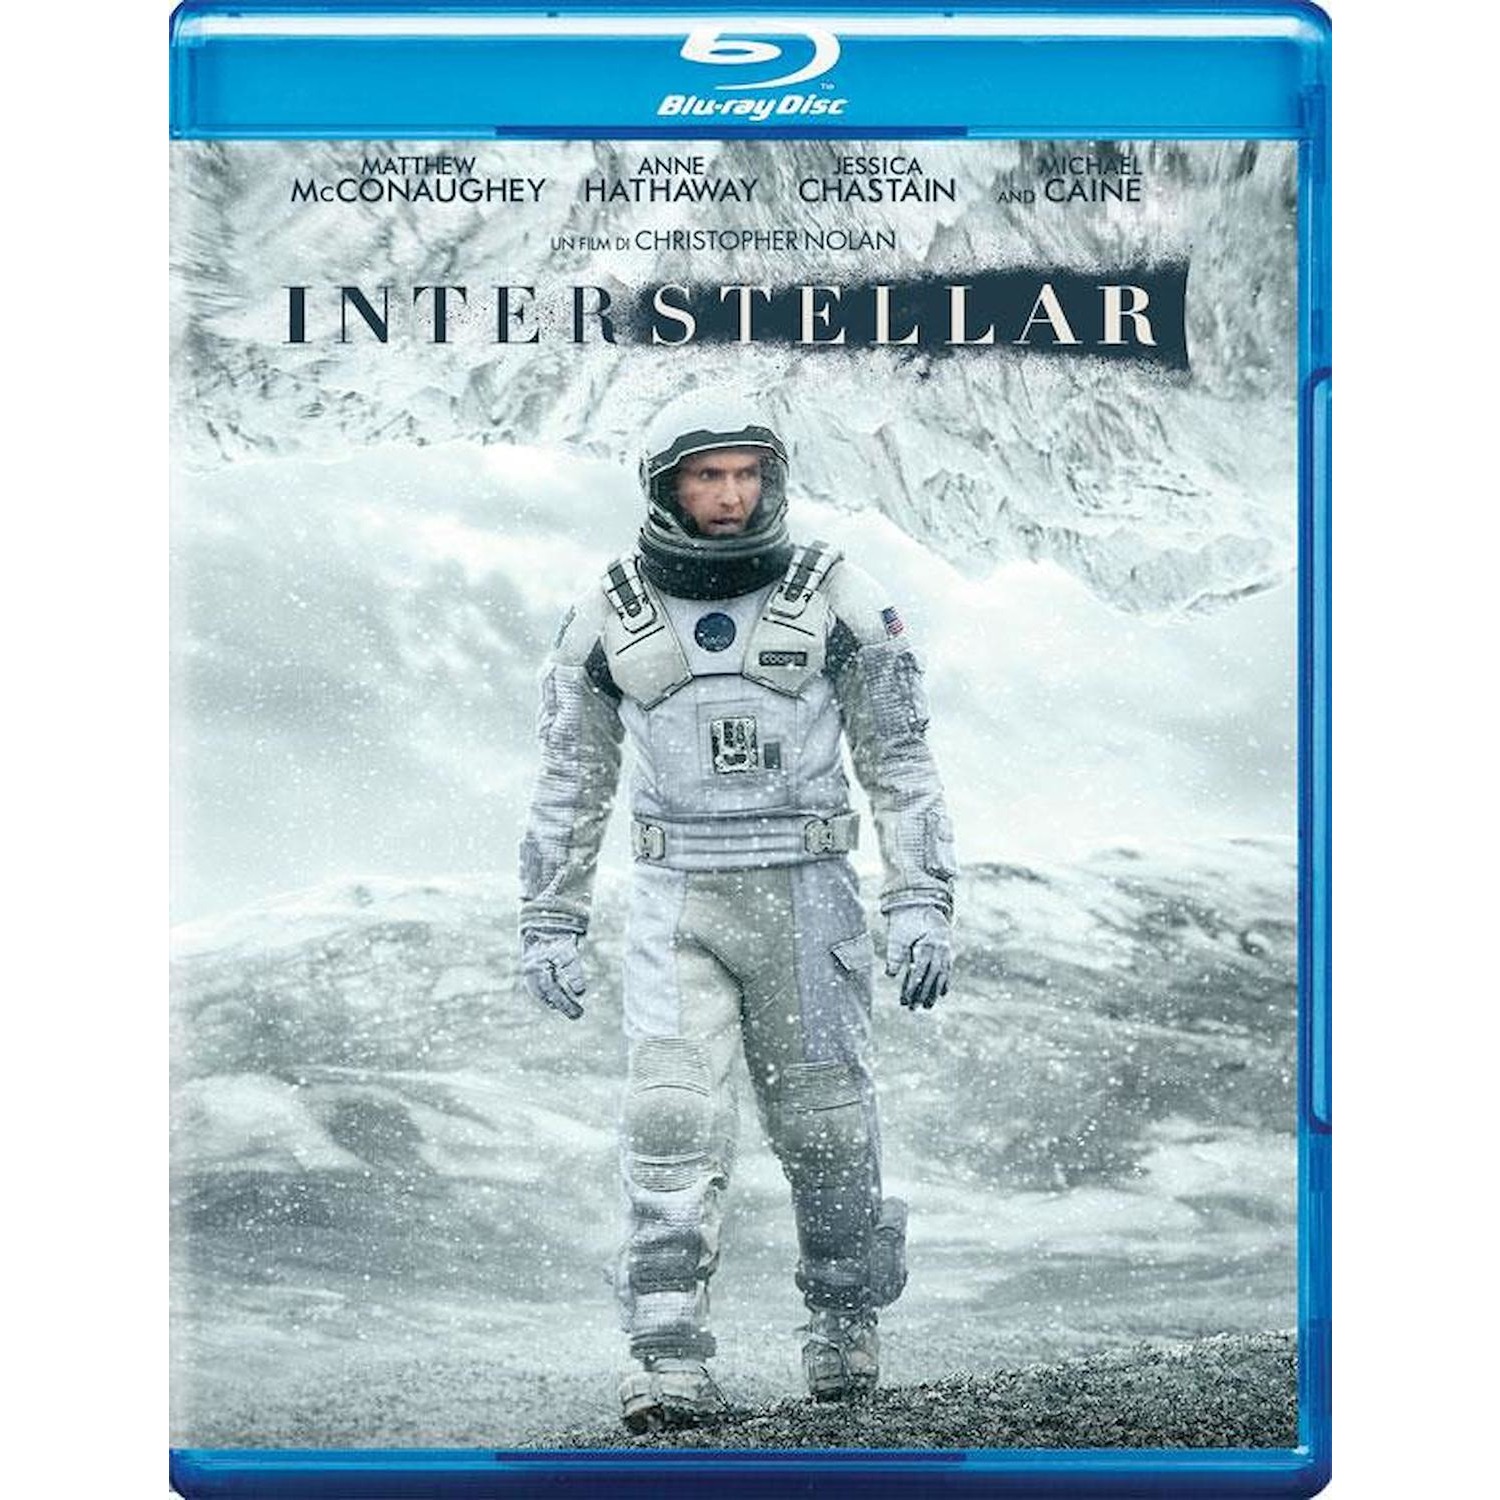 Immagine per Blu-ray Interstellar da DIMOStore